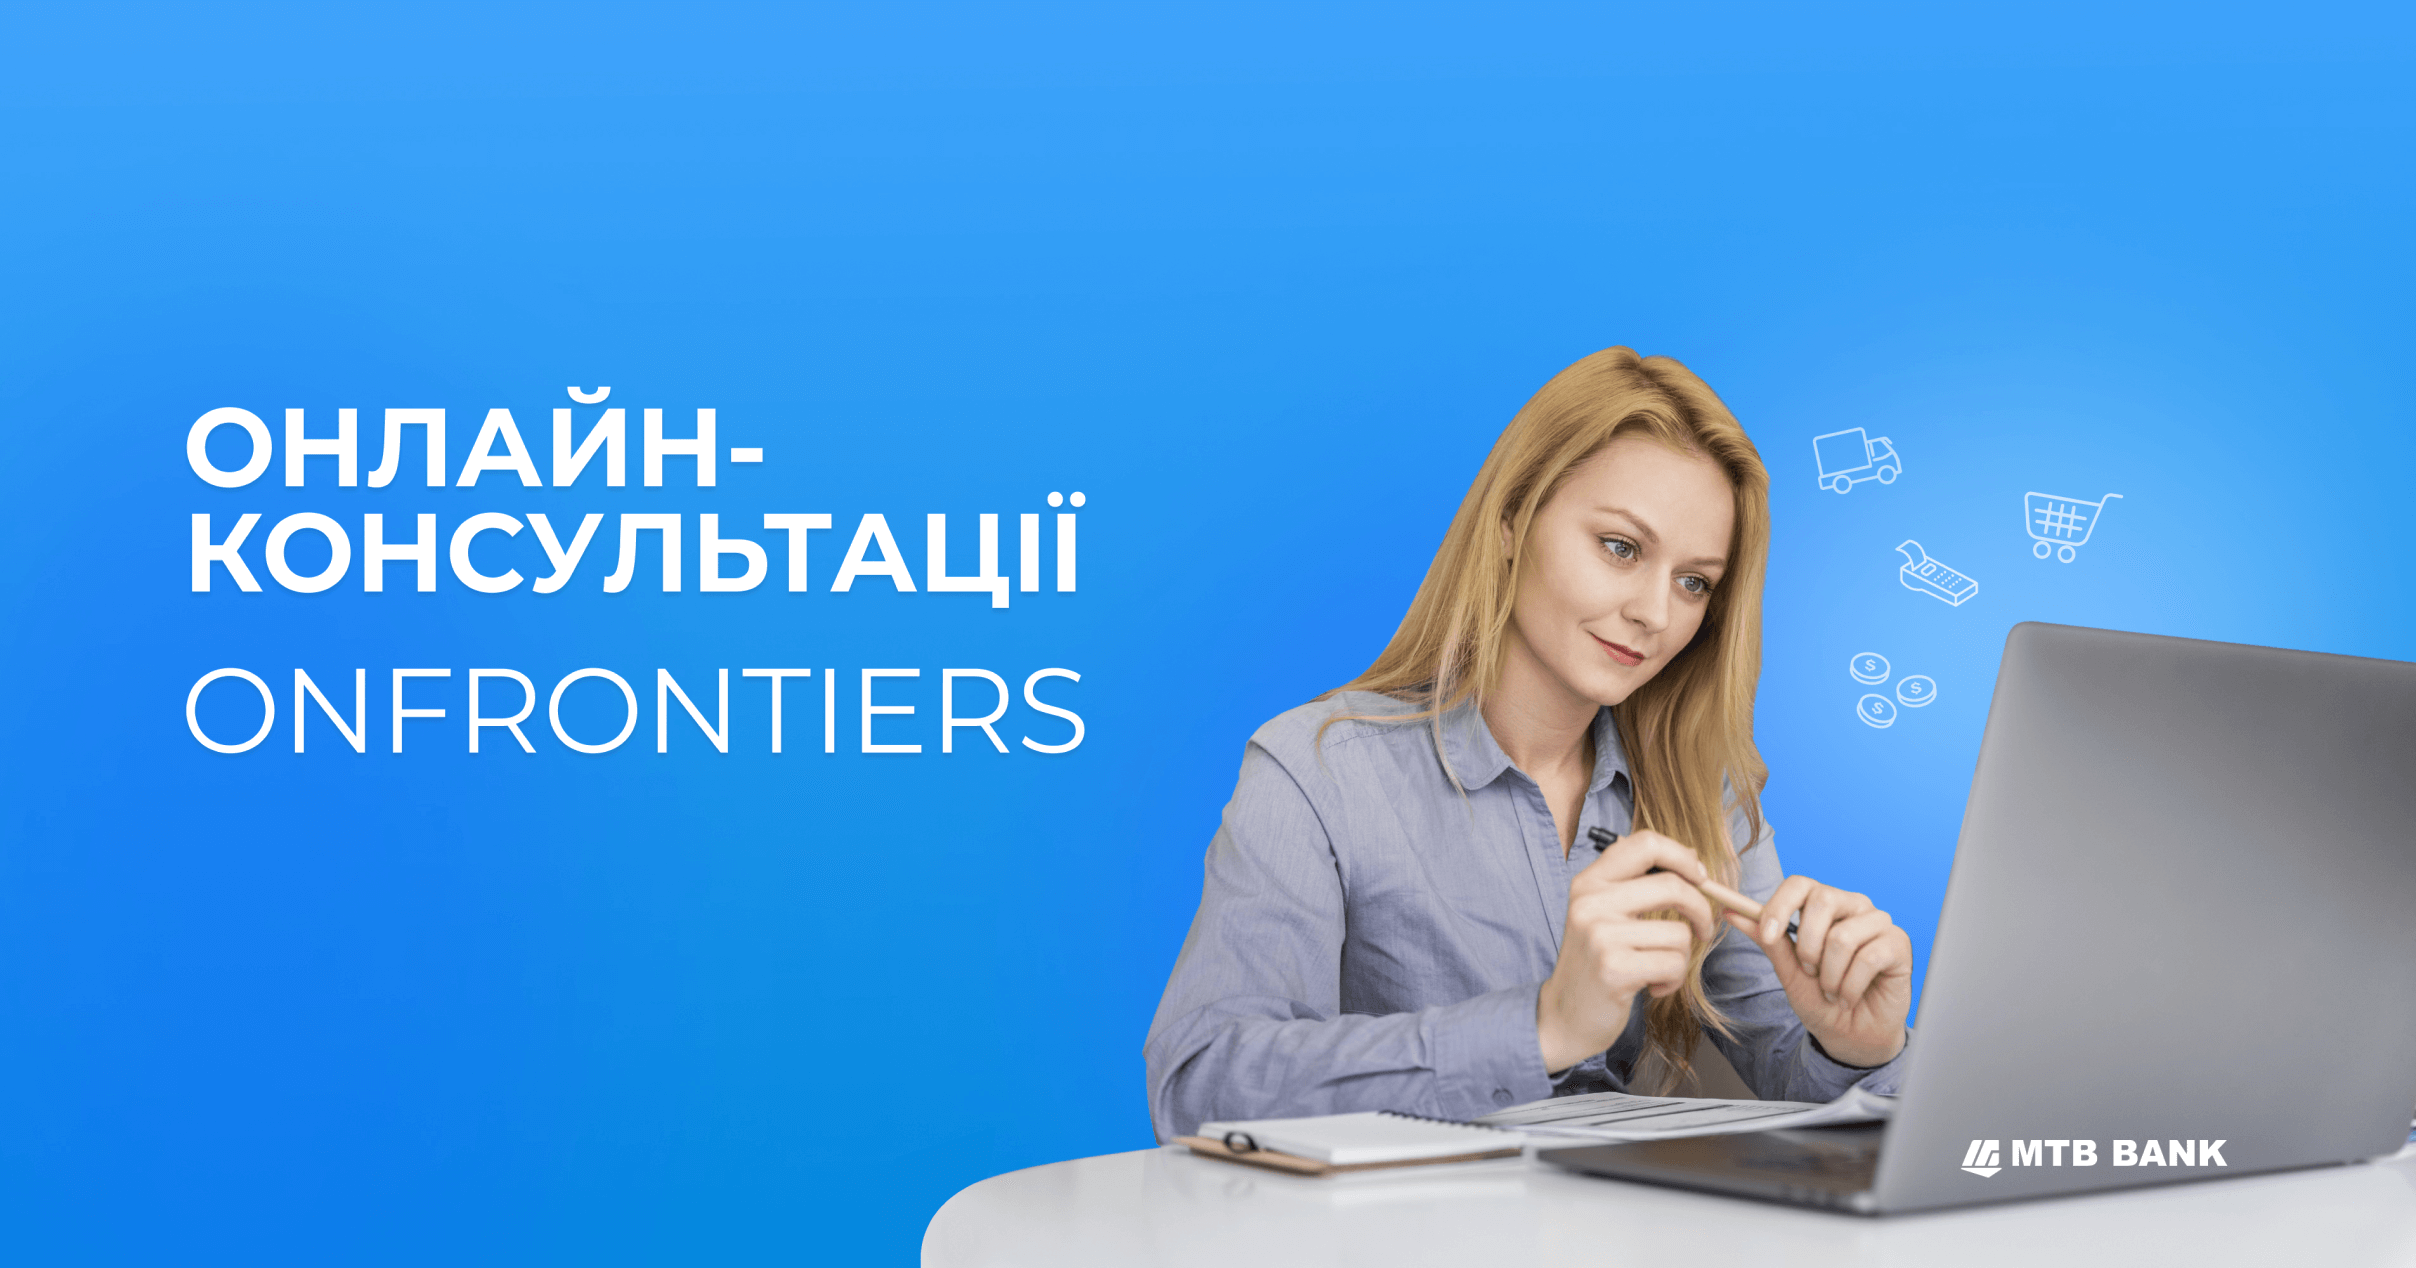 Третья волна бесплатных онлайн-консультаций ONFRONTIERS - фото - mtb.ua